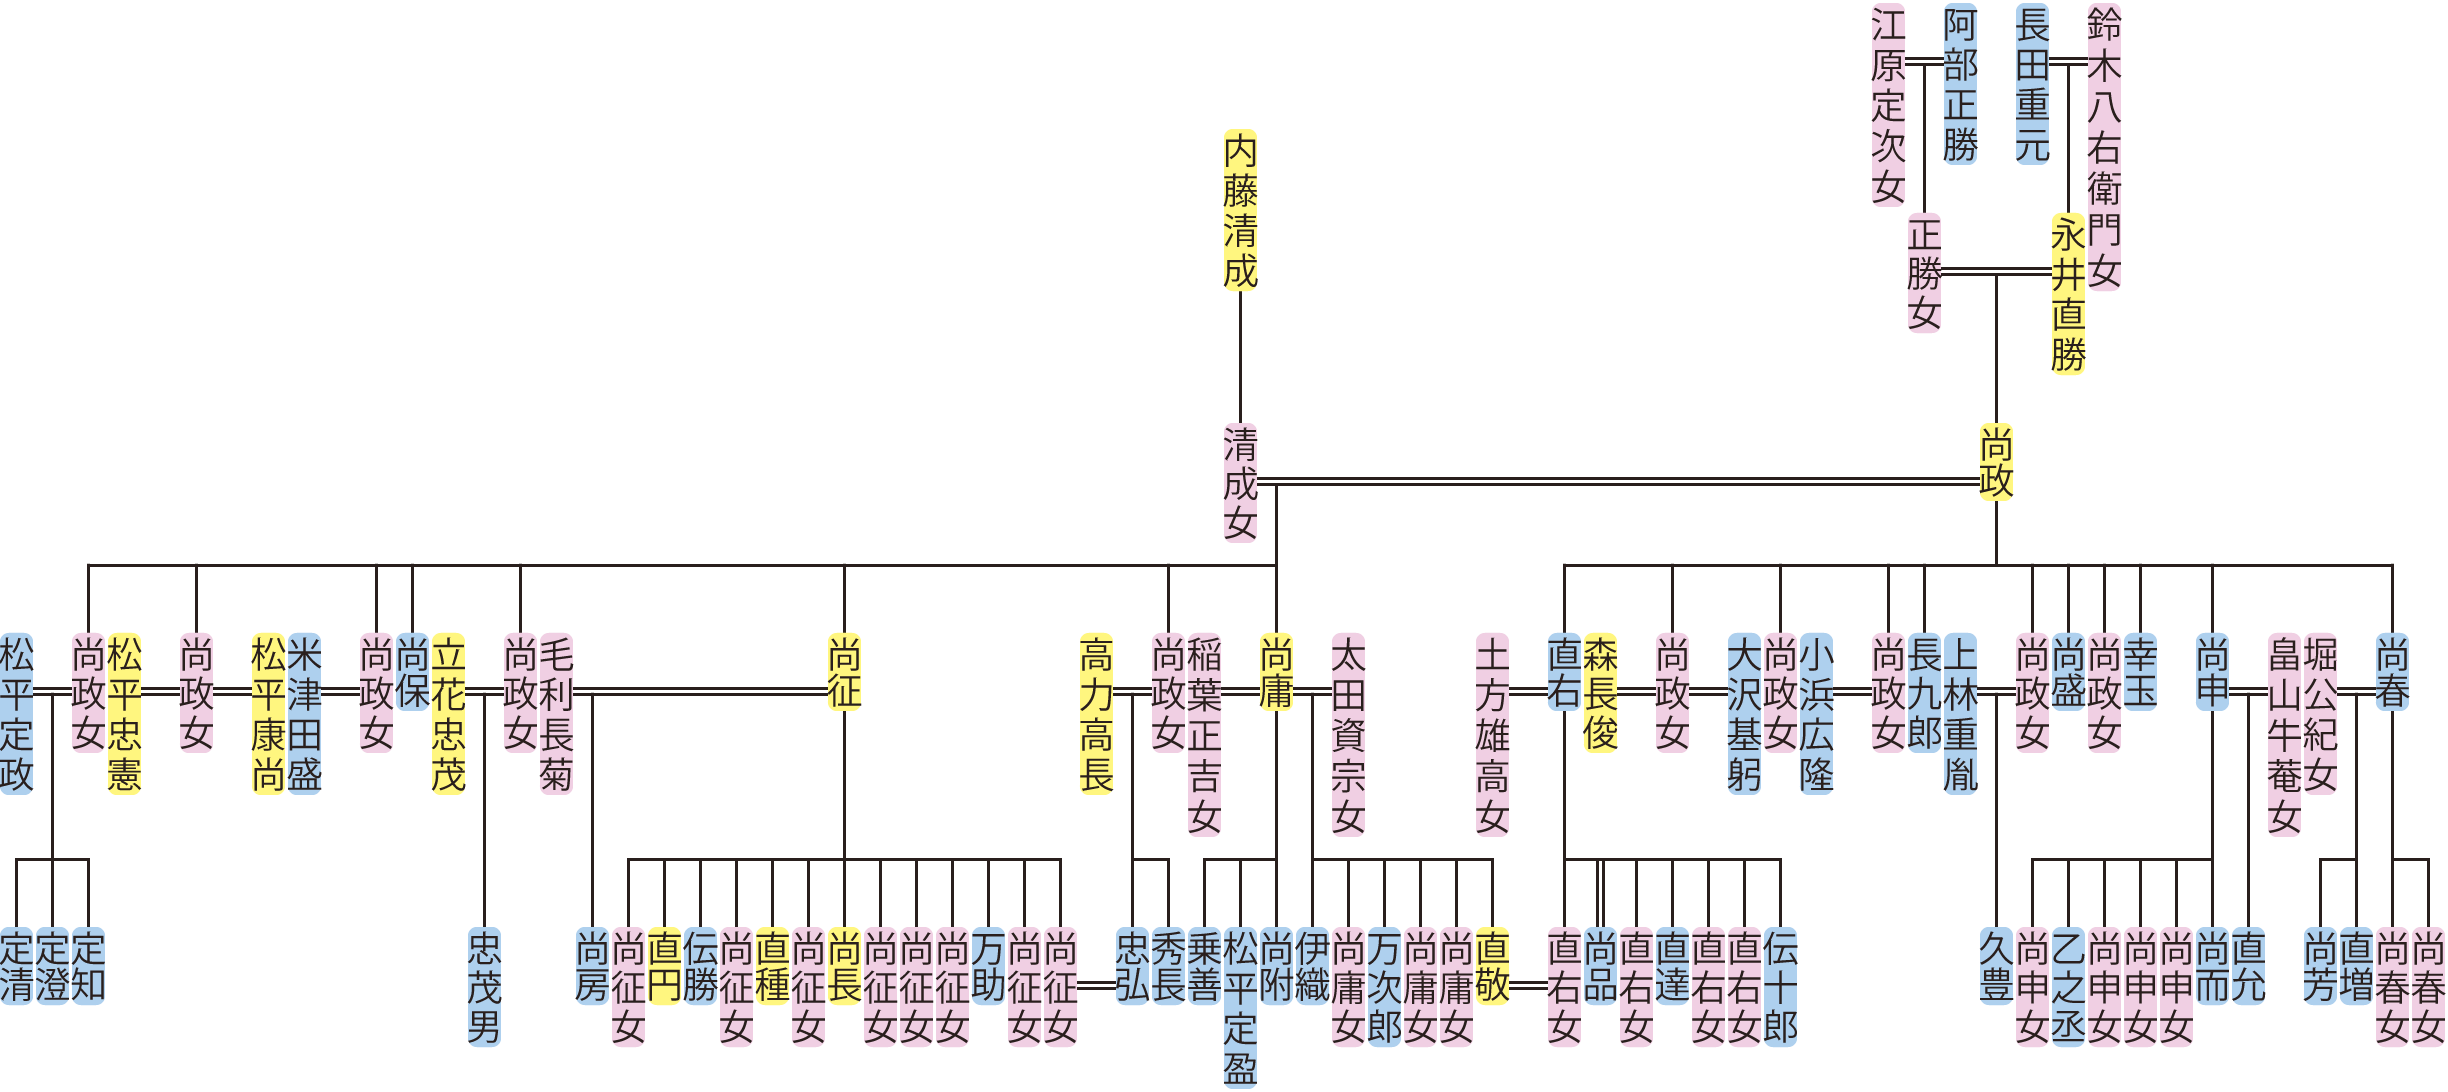 永井尚政の系図